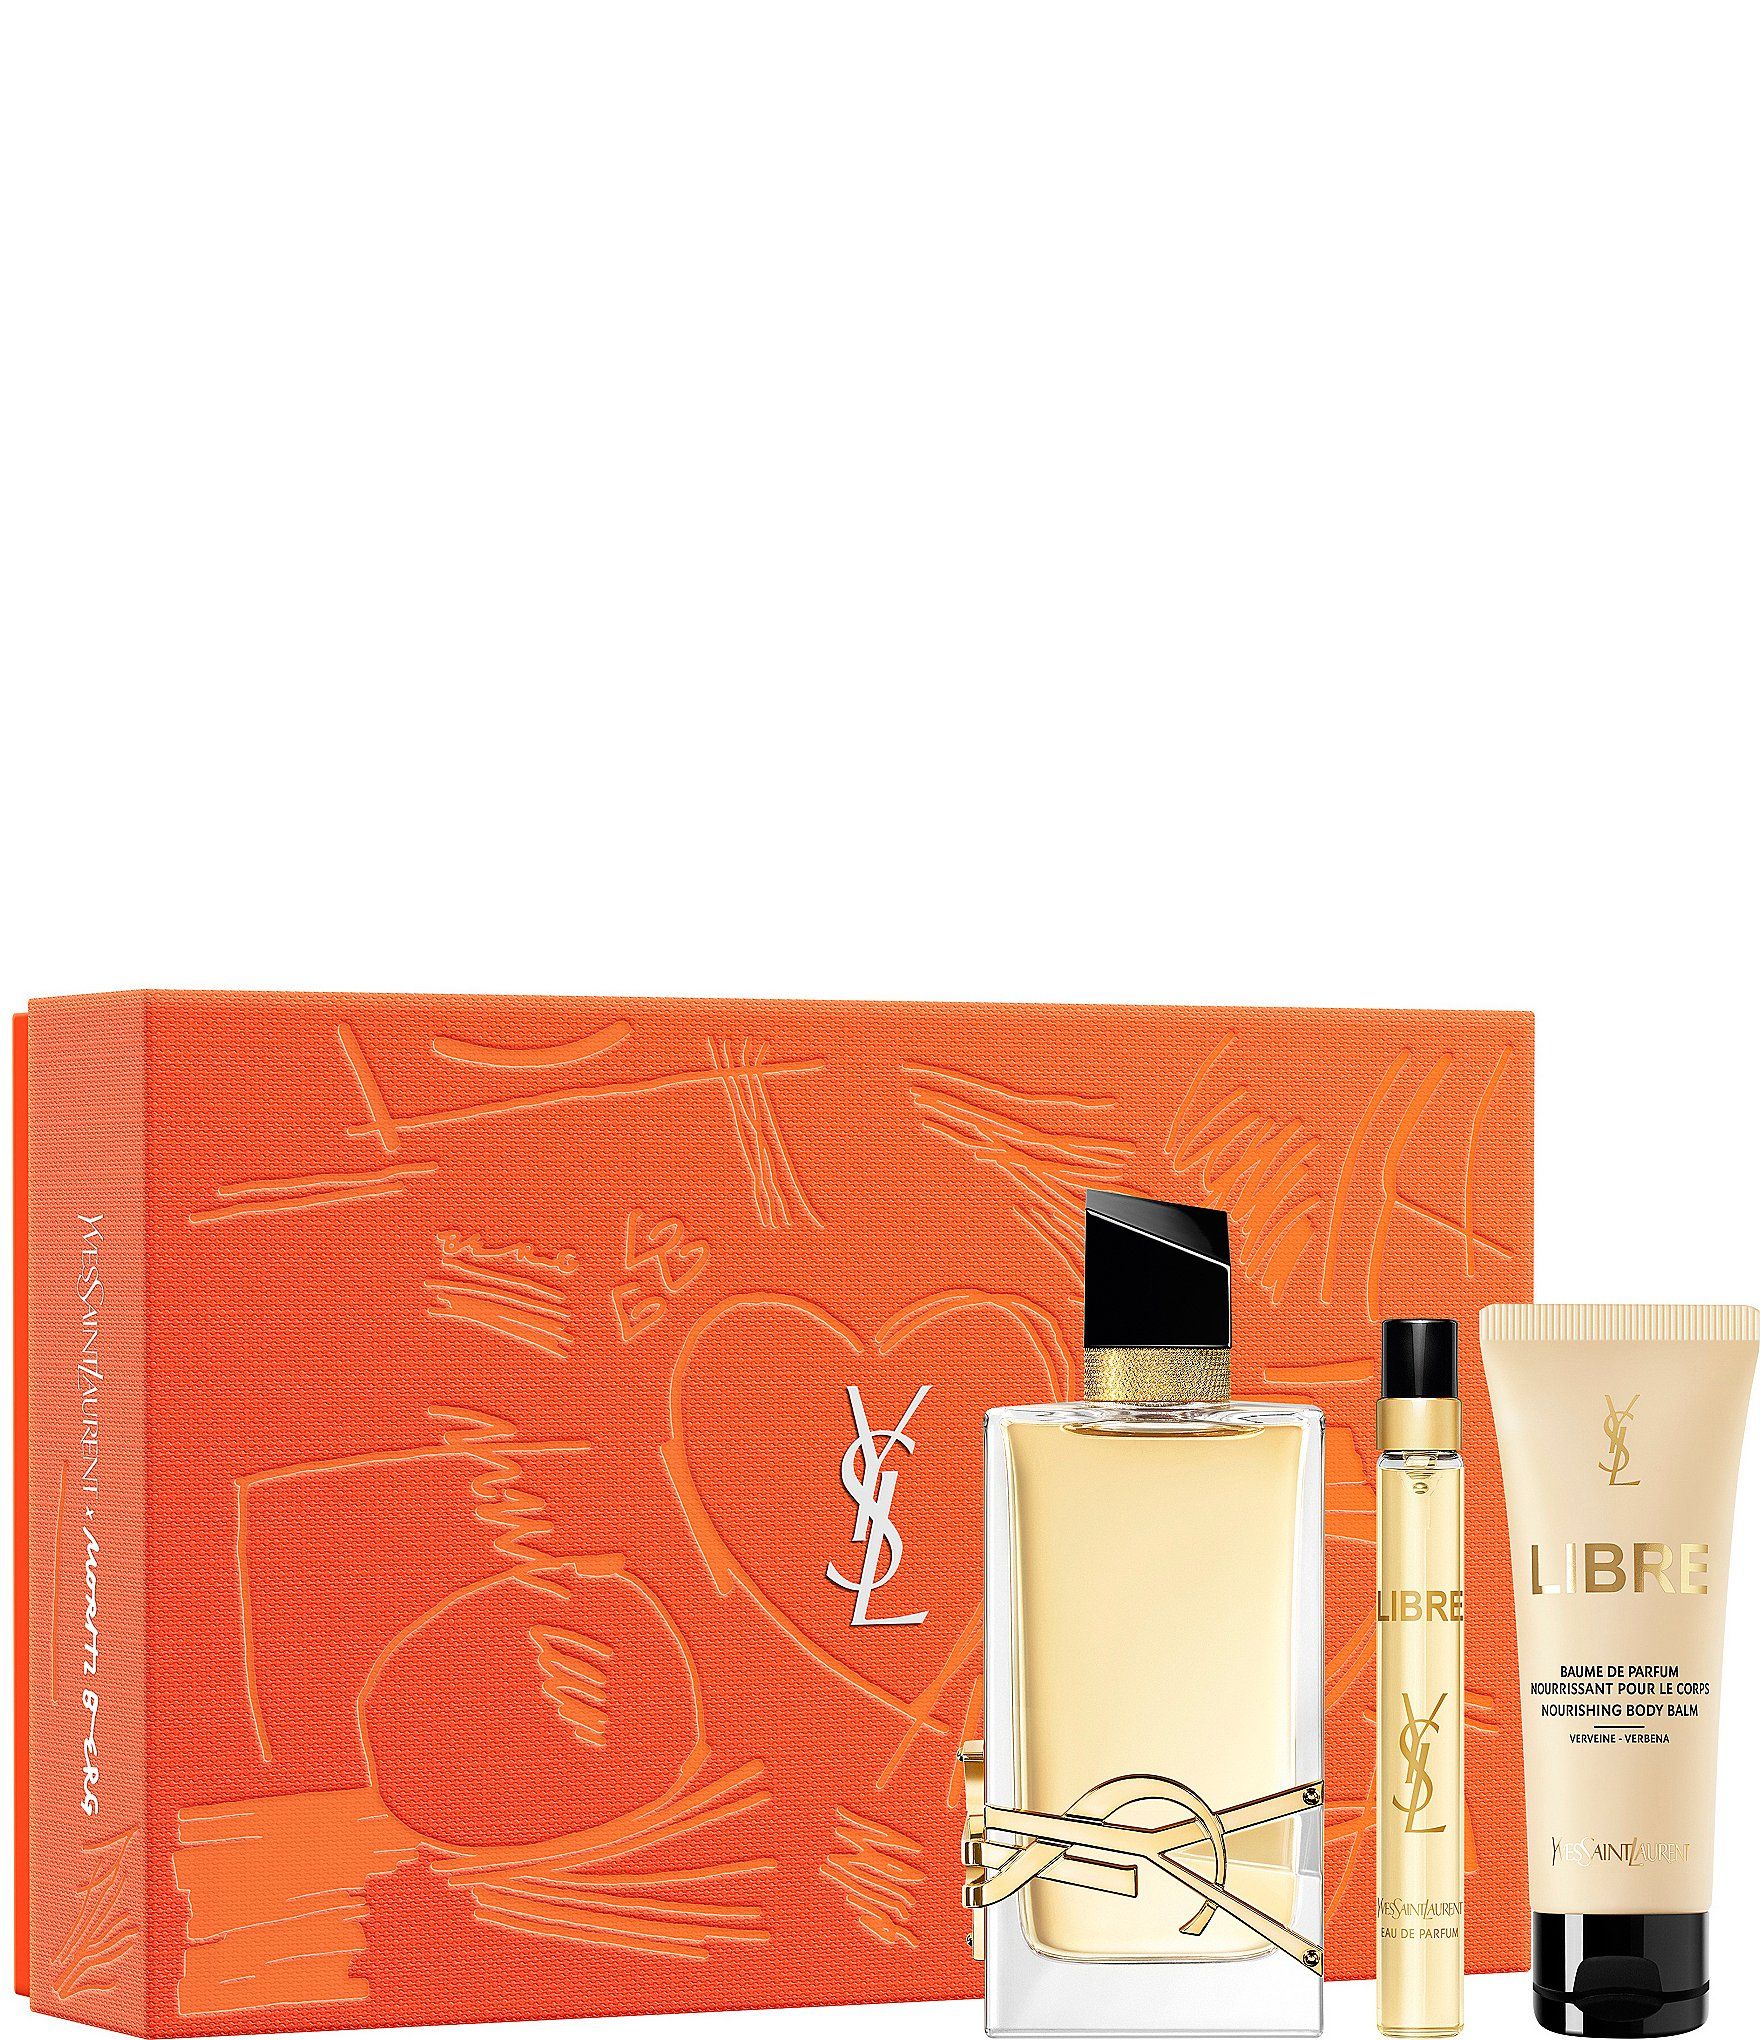 Libre Eau de Parfum 3-Piece Gift Set | Dillard's